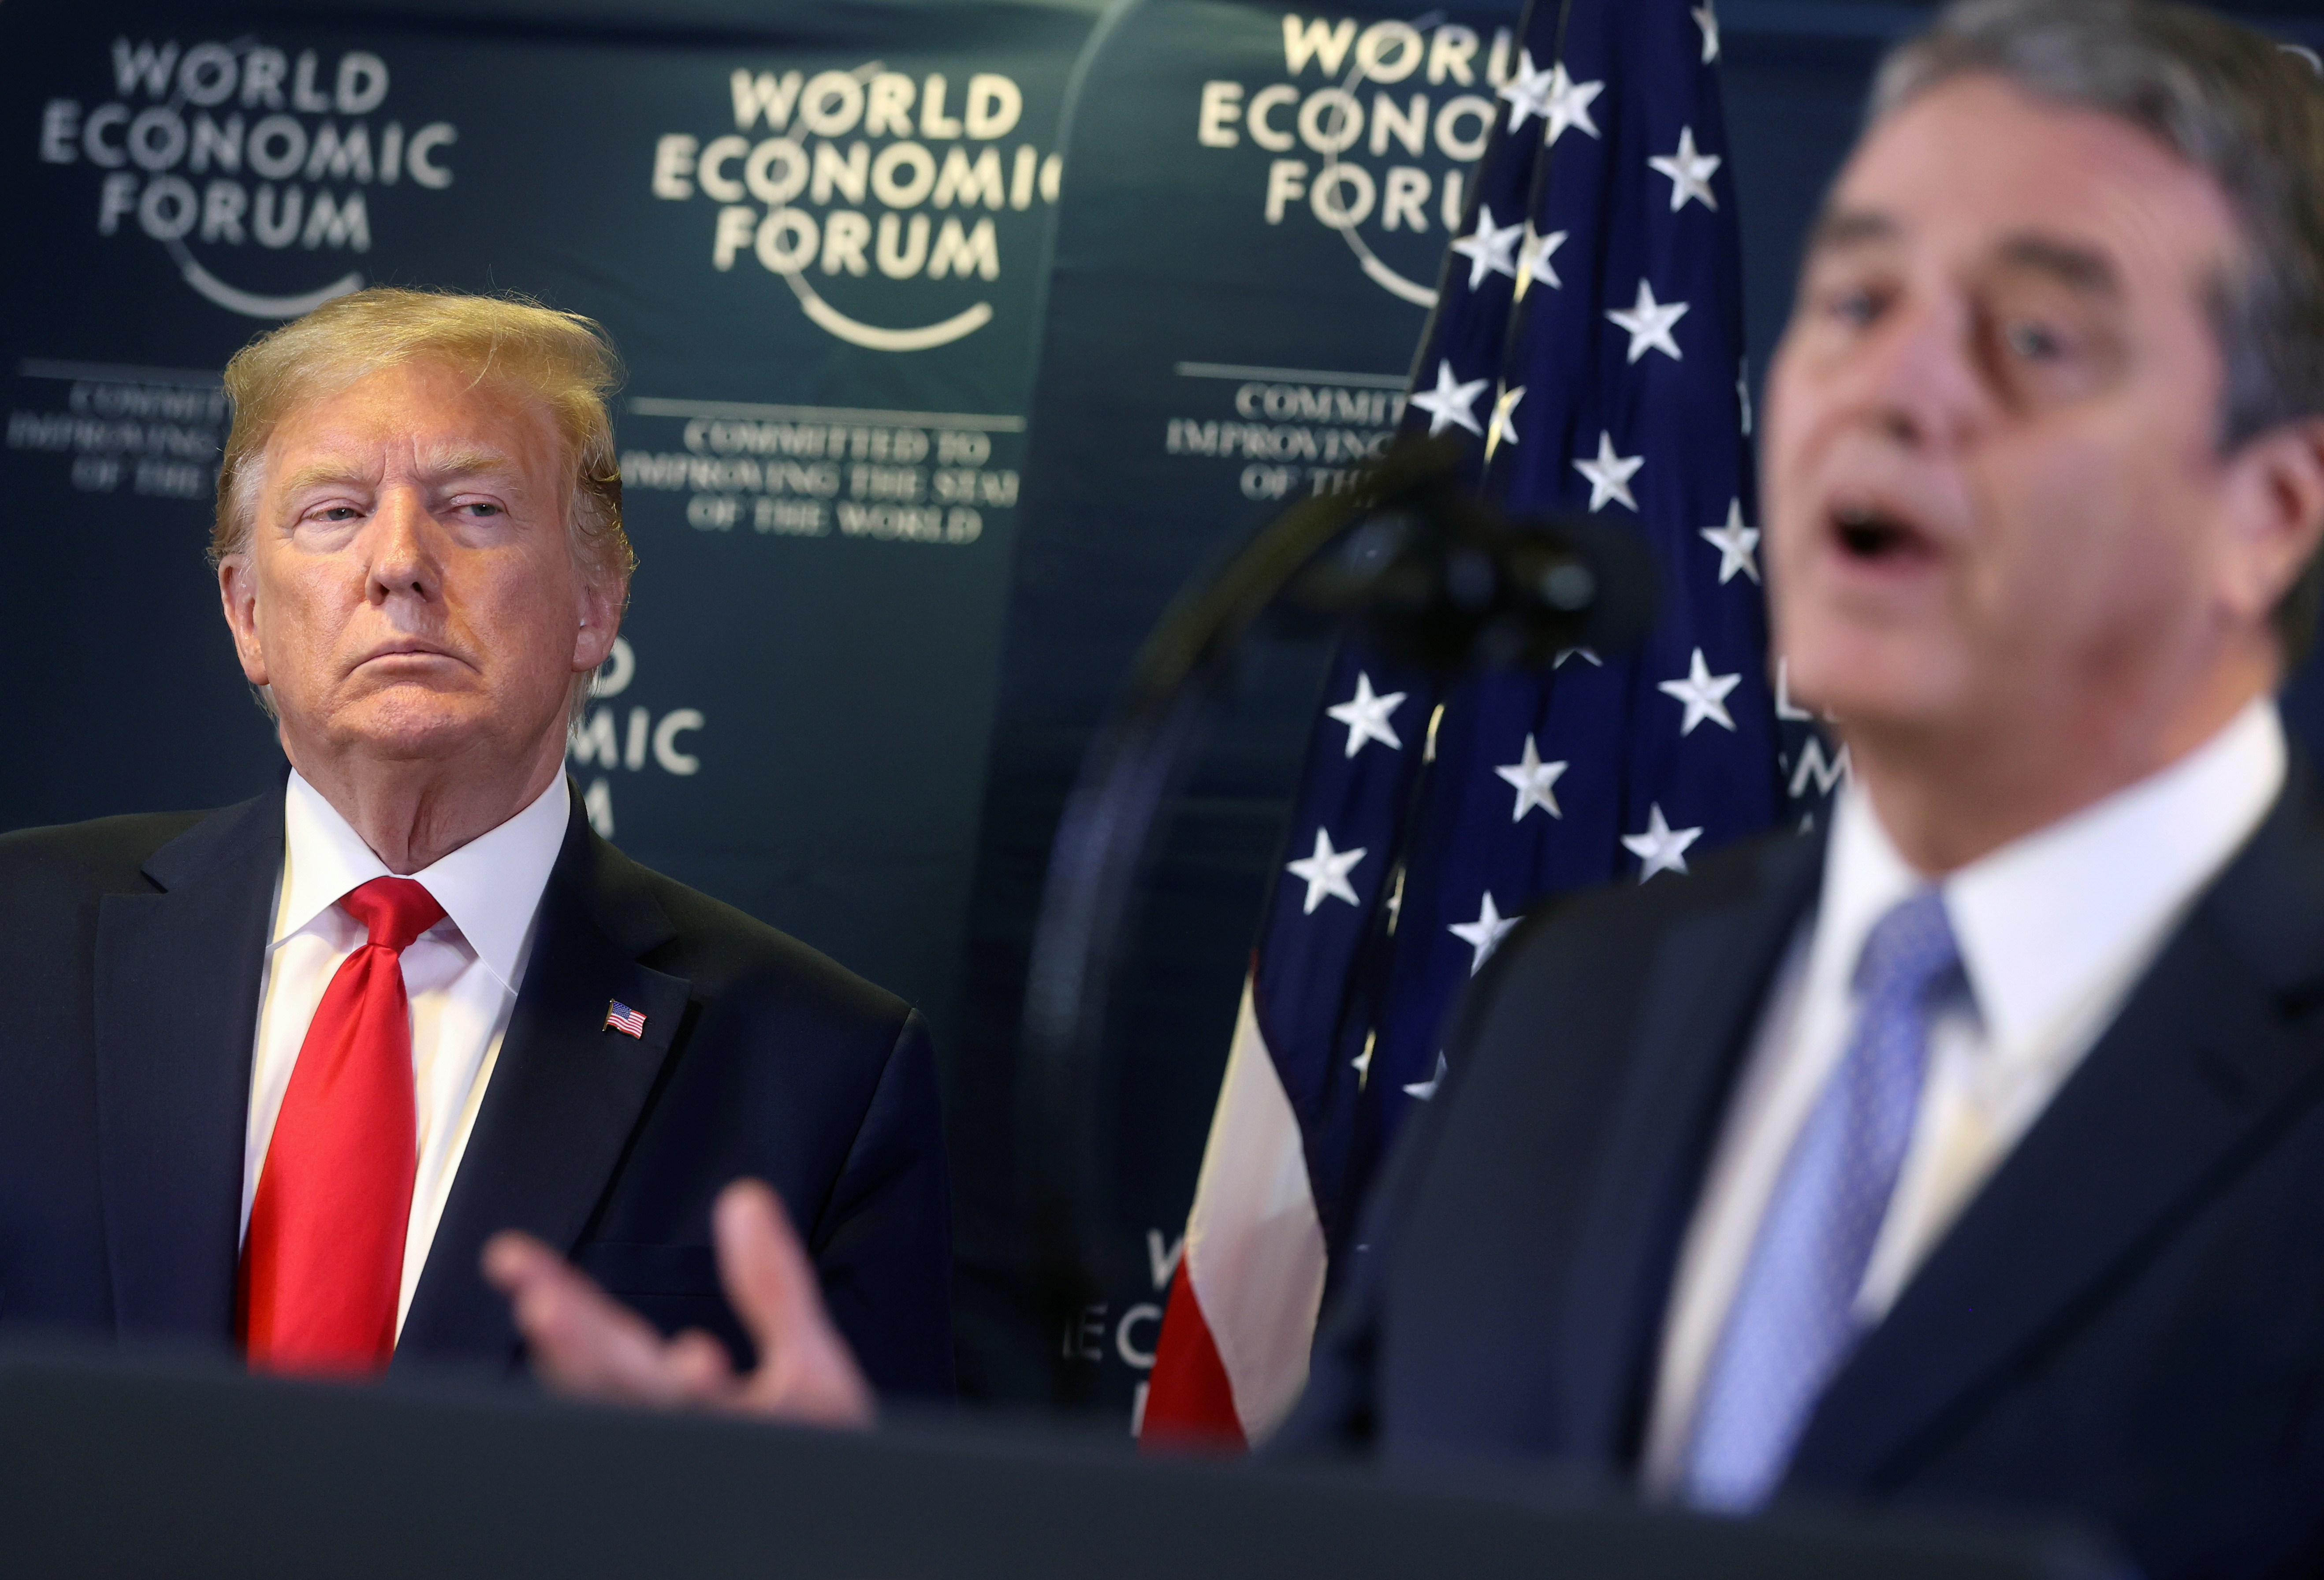 Le chef de l'OMC, bête noire de Trump, démissionne en pleine crise économique mondiale